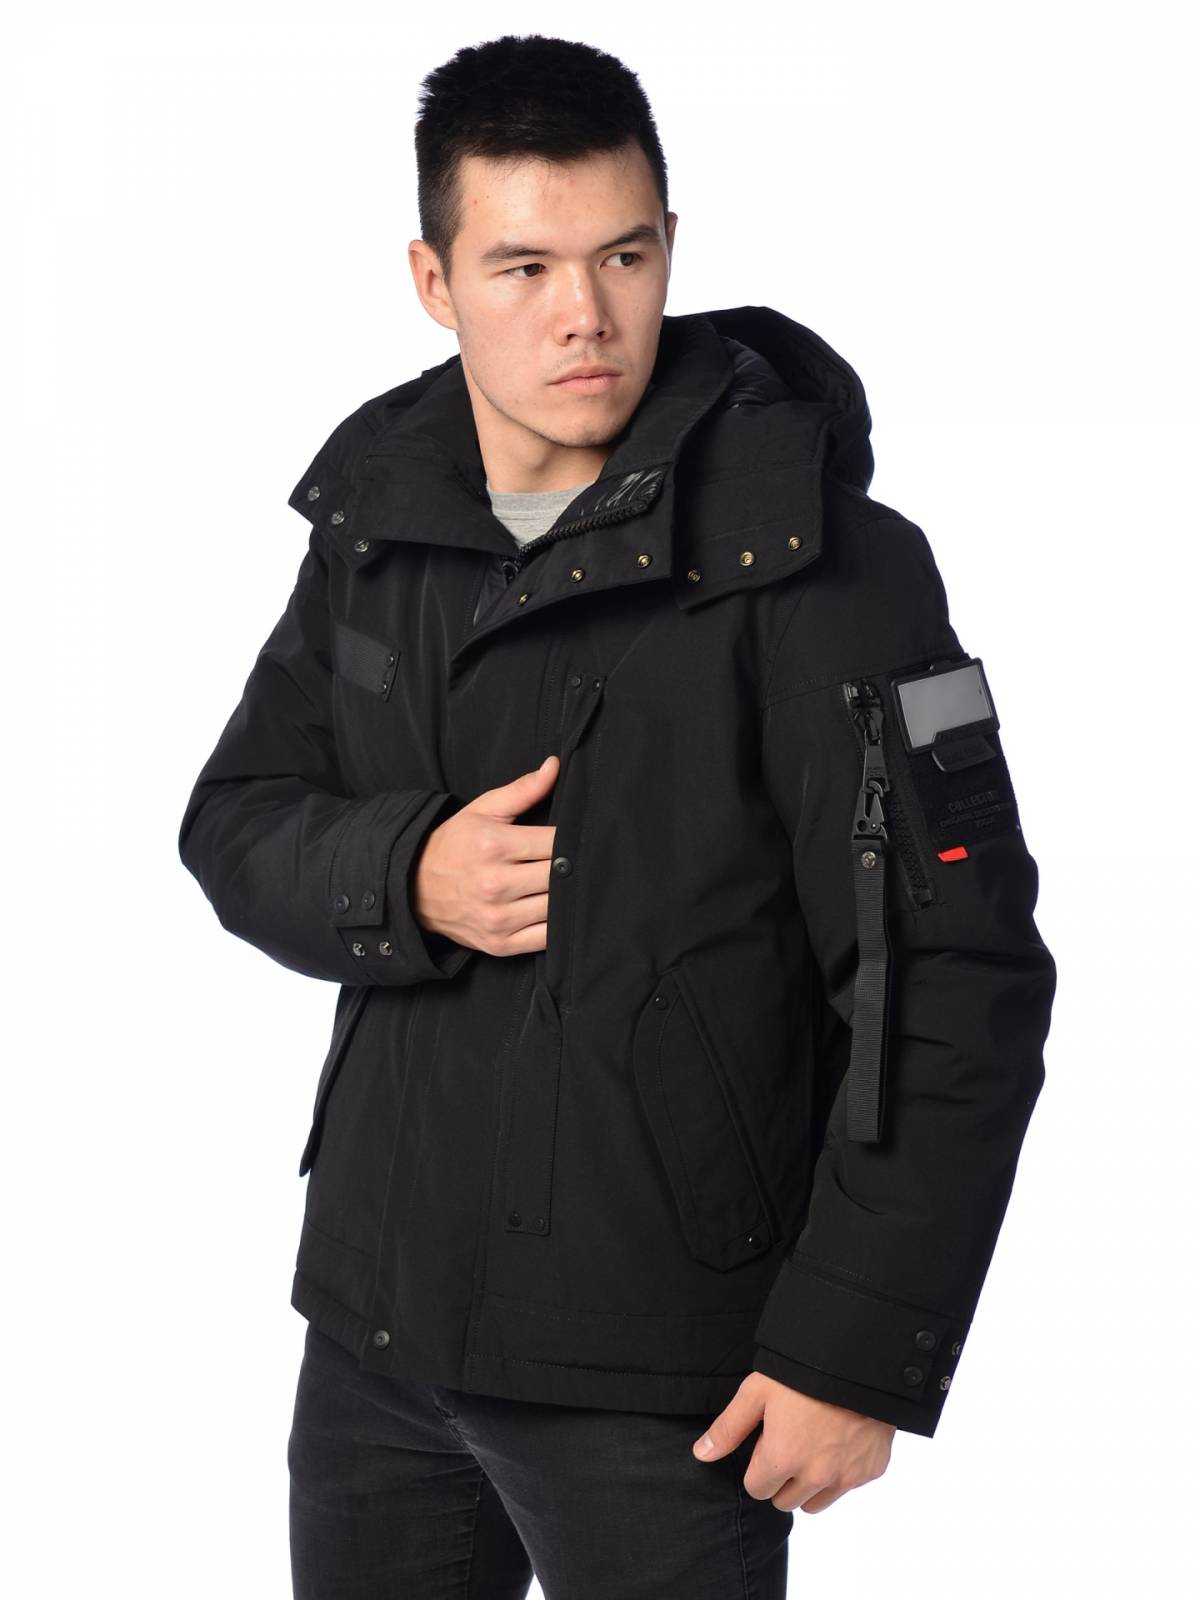 Зимняя куртка мужская Shark Force 3991 черная 54 RU